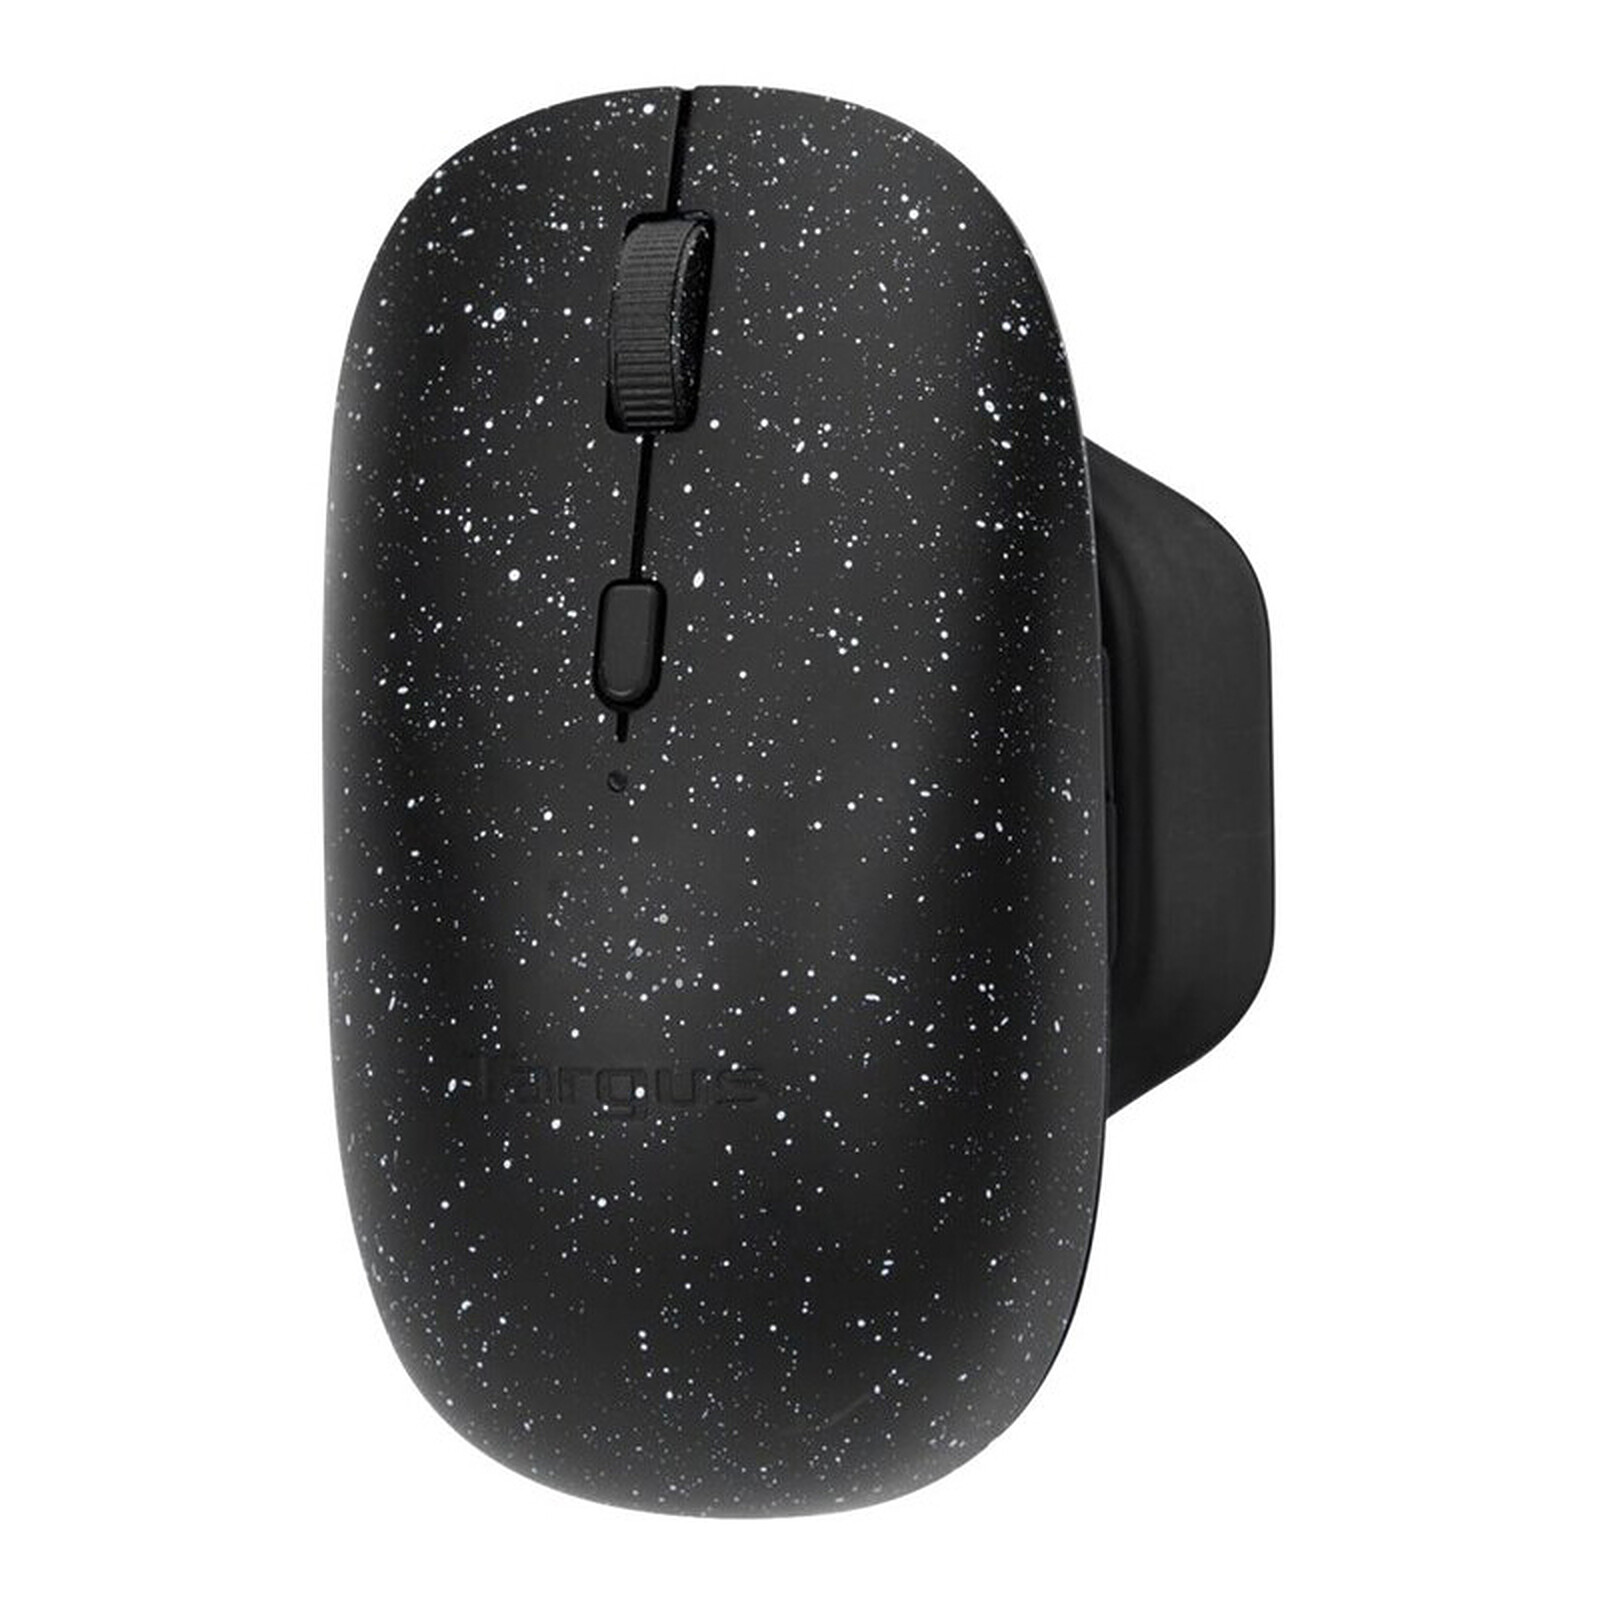 Advance Shape 6D Wireless Mouse (noir) - Souris PC - Garantie 3